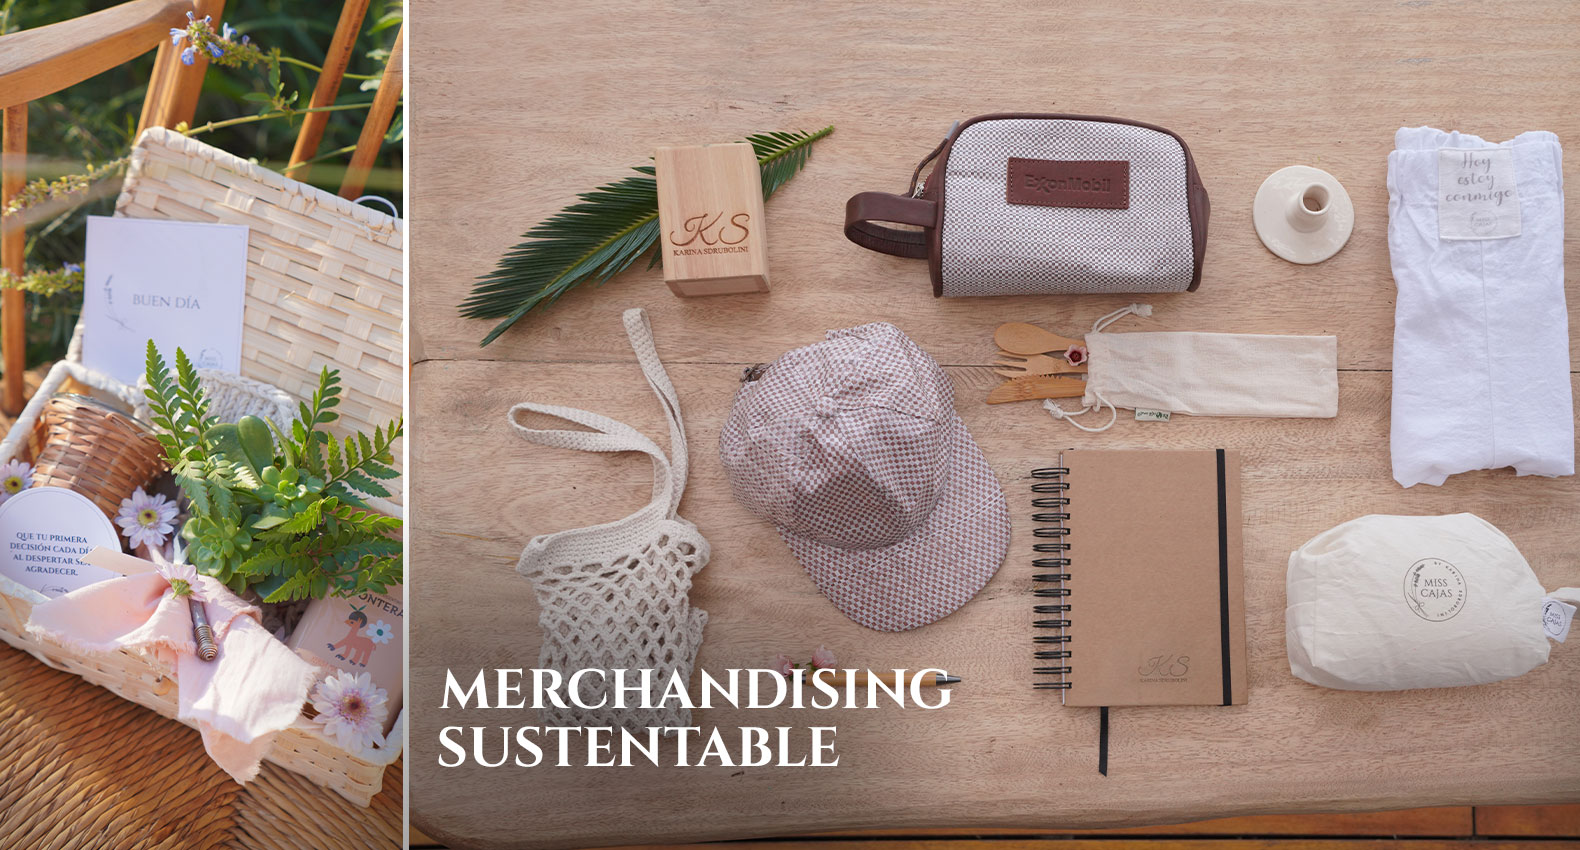 Merchandising Sustentable